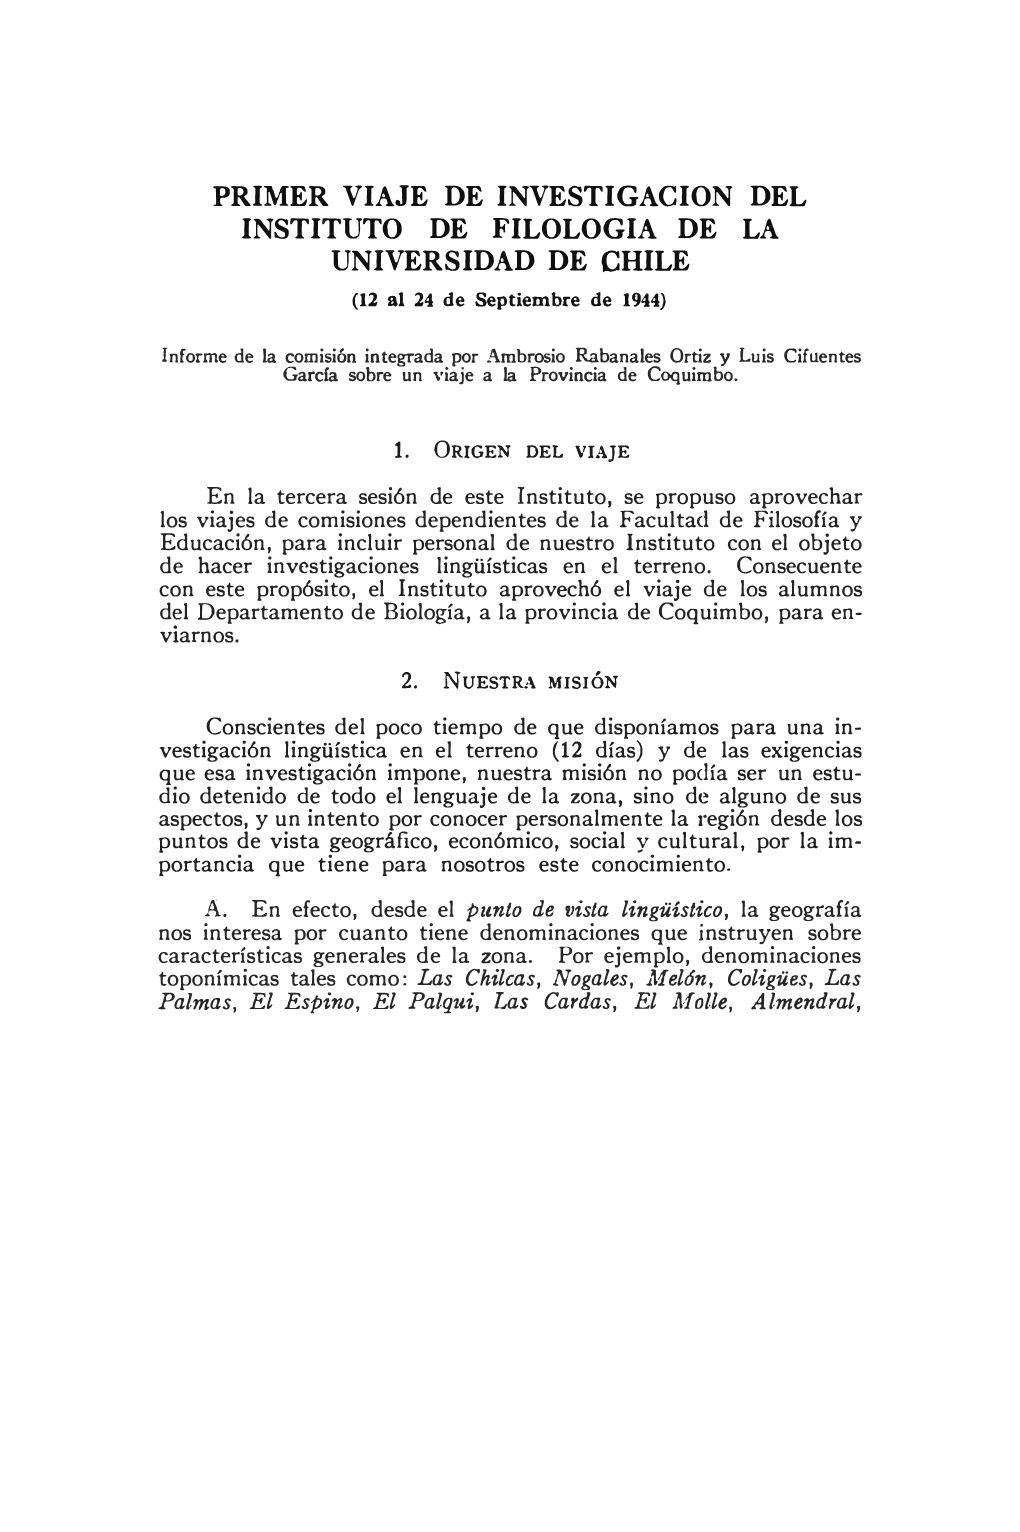 PRIMER VIAJE DE INVESTIGACION DEL INSTITUTO DE FILOLOGIA DE LA UNIVERSIDAD DE CHILE (12 Al 24 De Septiembre De 1944)